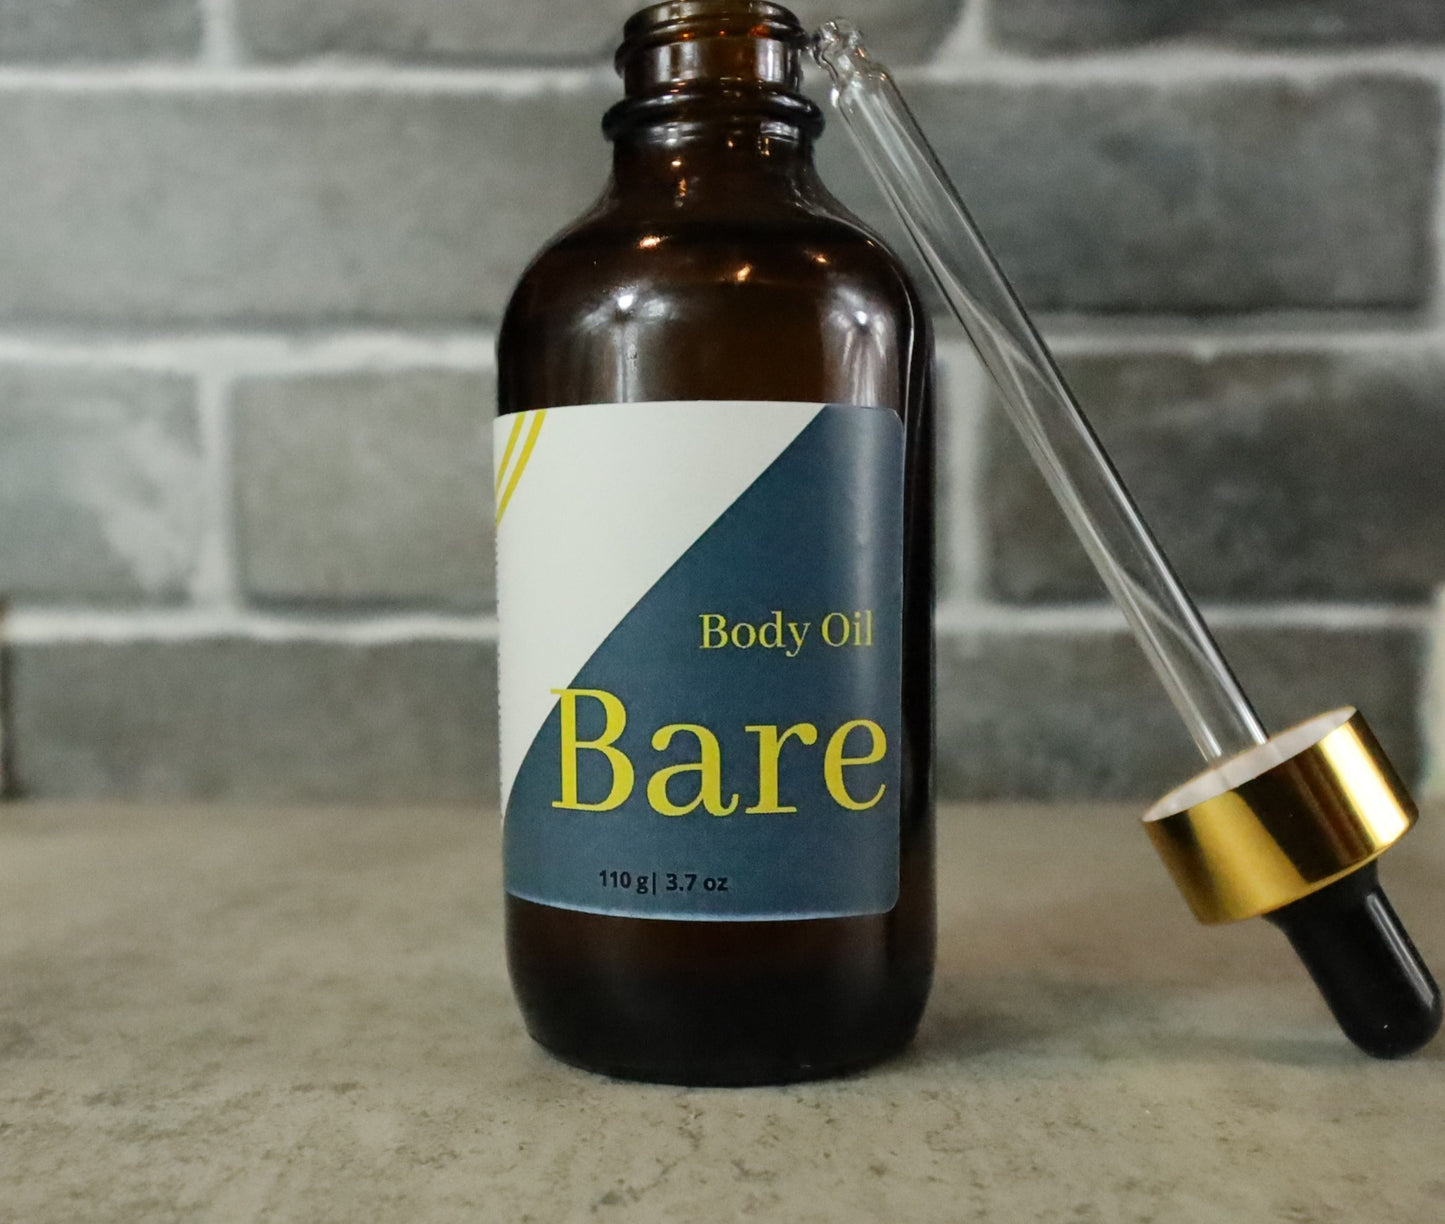 Bare organic body oil for soft skin, for moisturized skin.